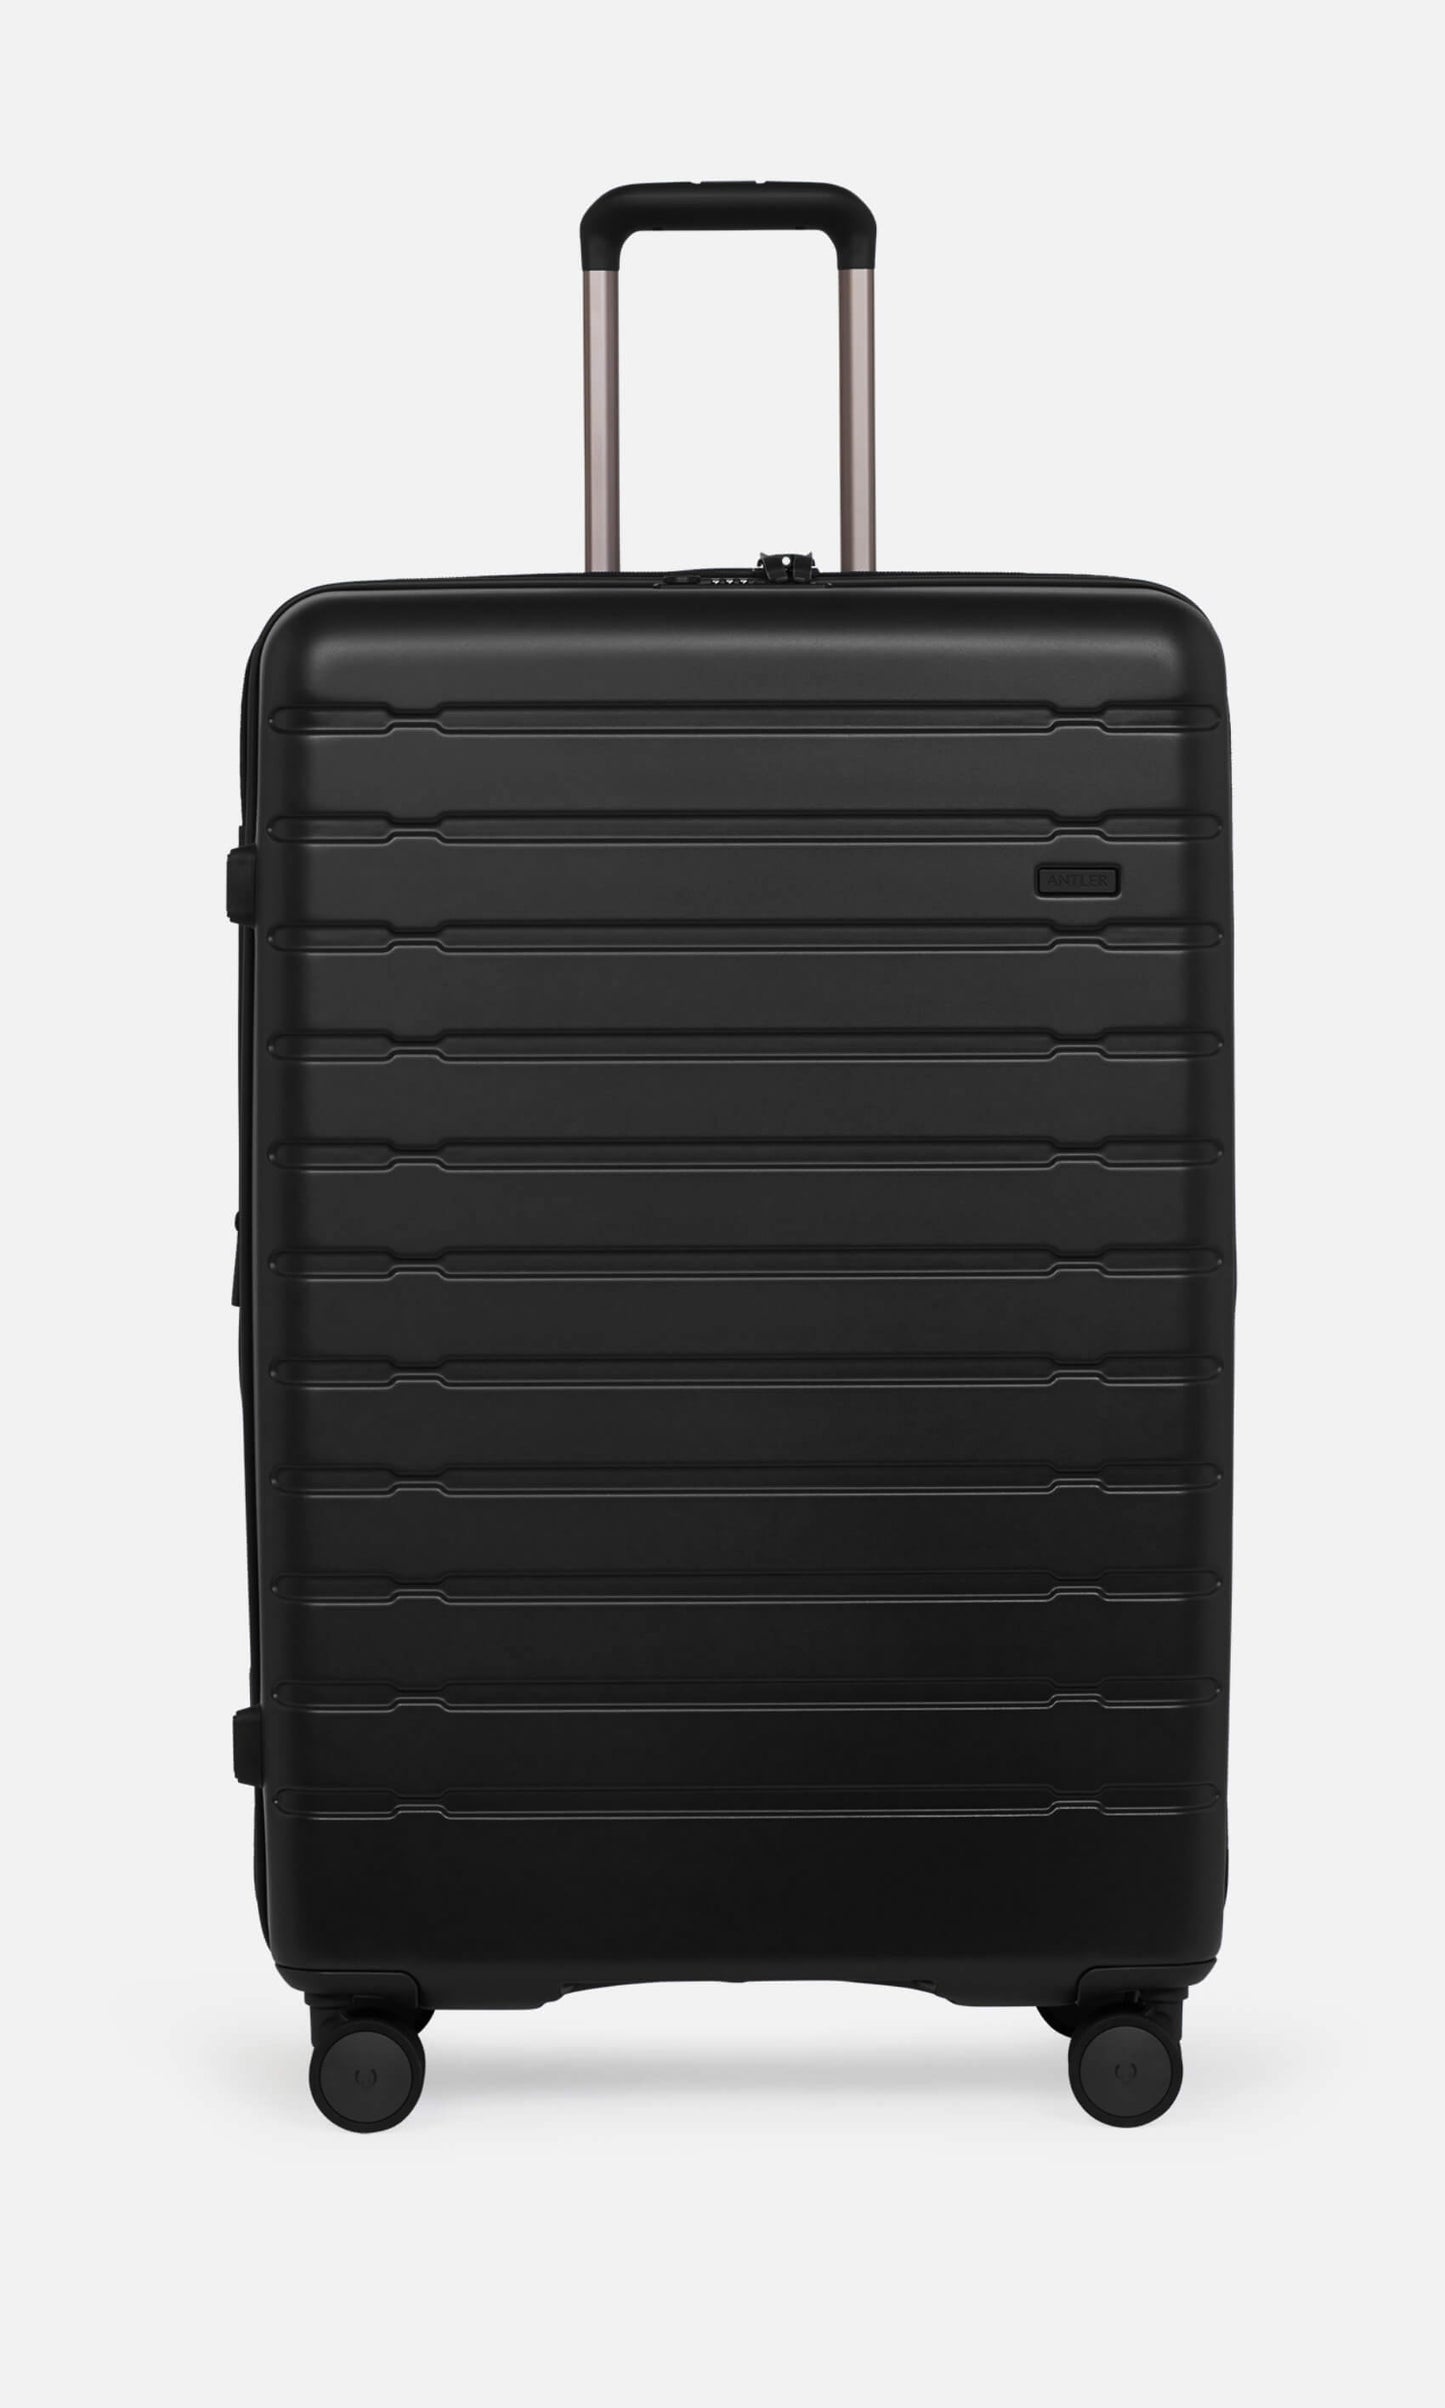 Antler Luggage -  Stamford large in midnight black - Hard Suitcases Stamford Large Suitcase Black | Hard Luggage | Antler UK